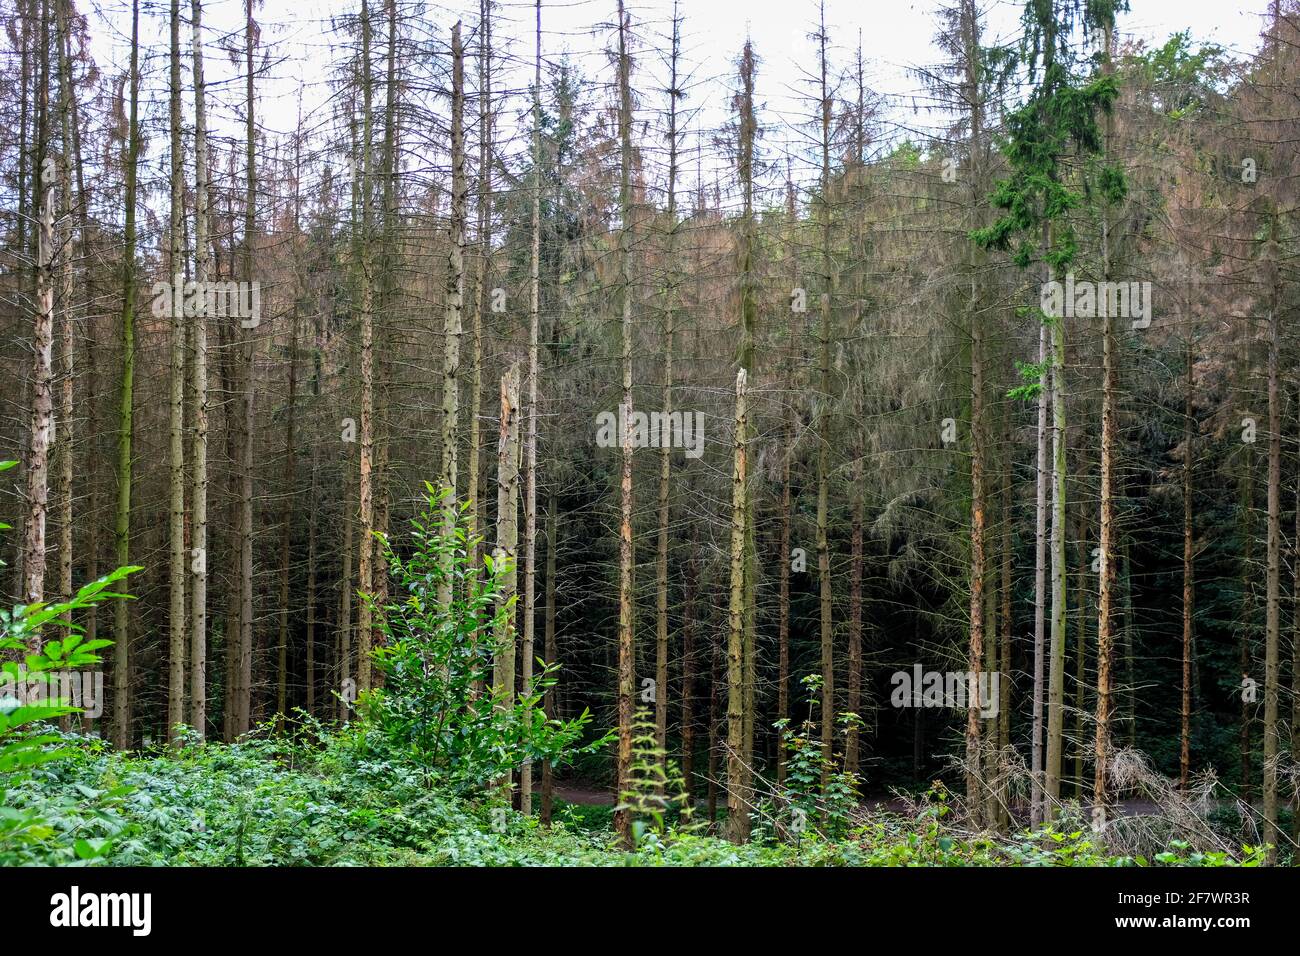 25.07.2020, Essen, Nordrhein-Westfalen, Deutschland - Baumsterben in einem staedtischen Waldgebiet in Essen Stock Photo